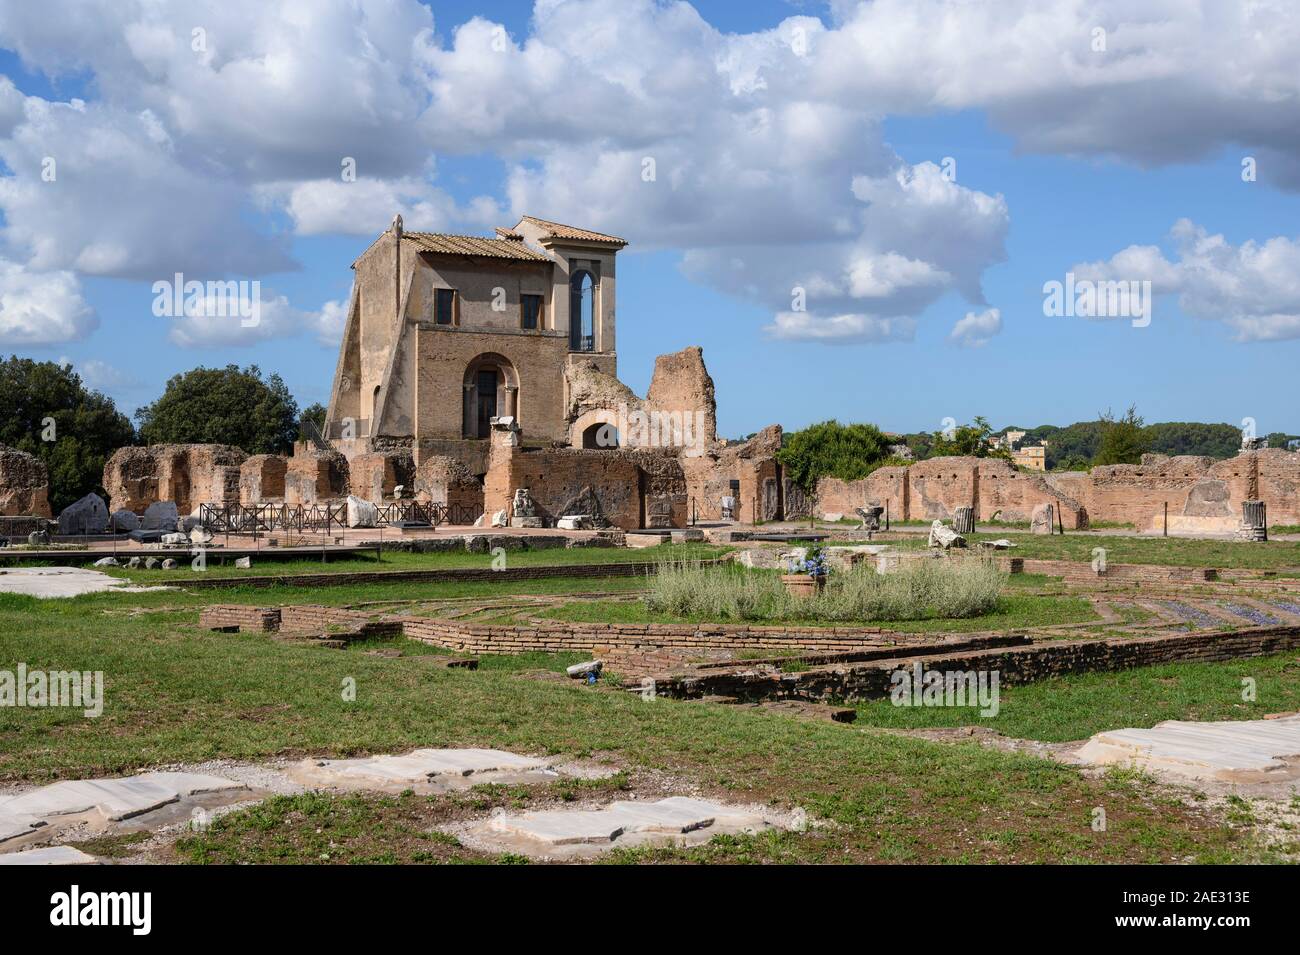 Rom. Italien. Der Casina Farnese und Reste der Domus Flavia (flavian Palace) auf dem Palatin. Ansicht zeigt das peristyl Garten und achteckige Stockfoto